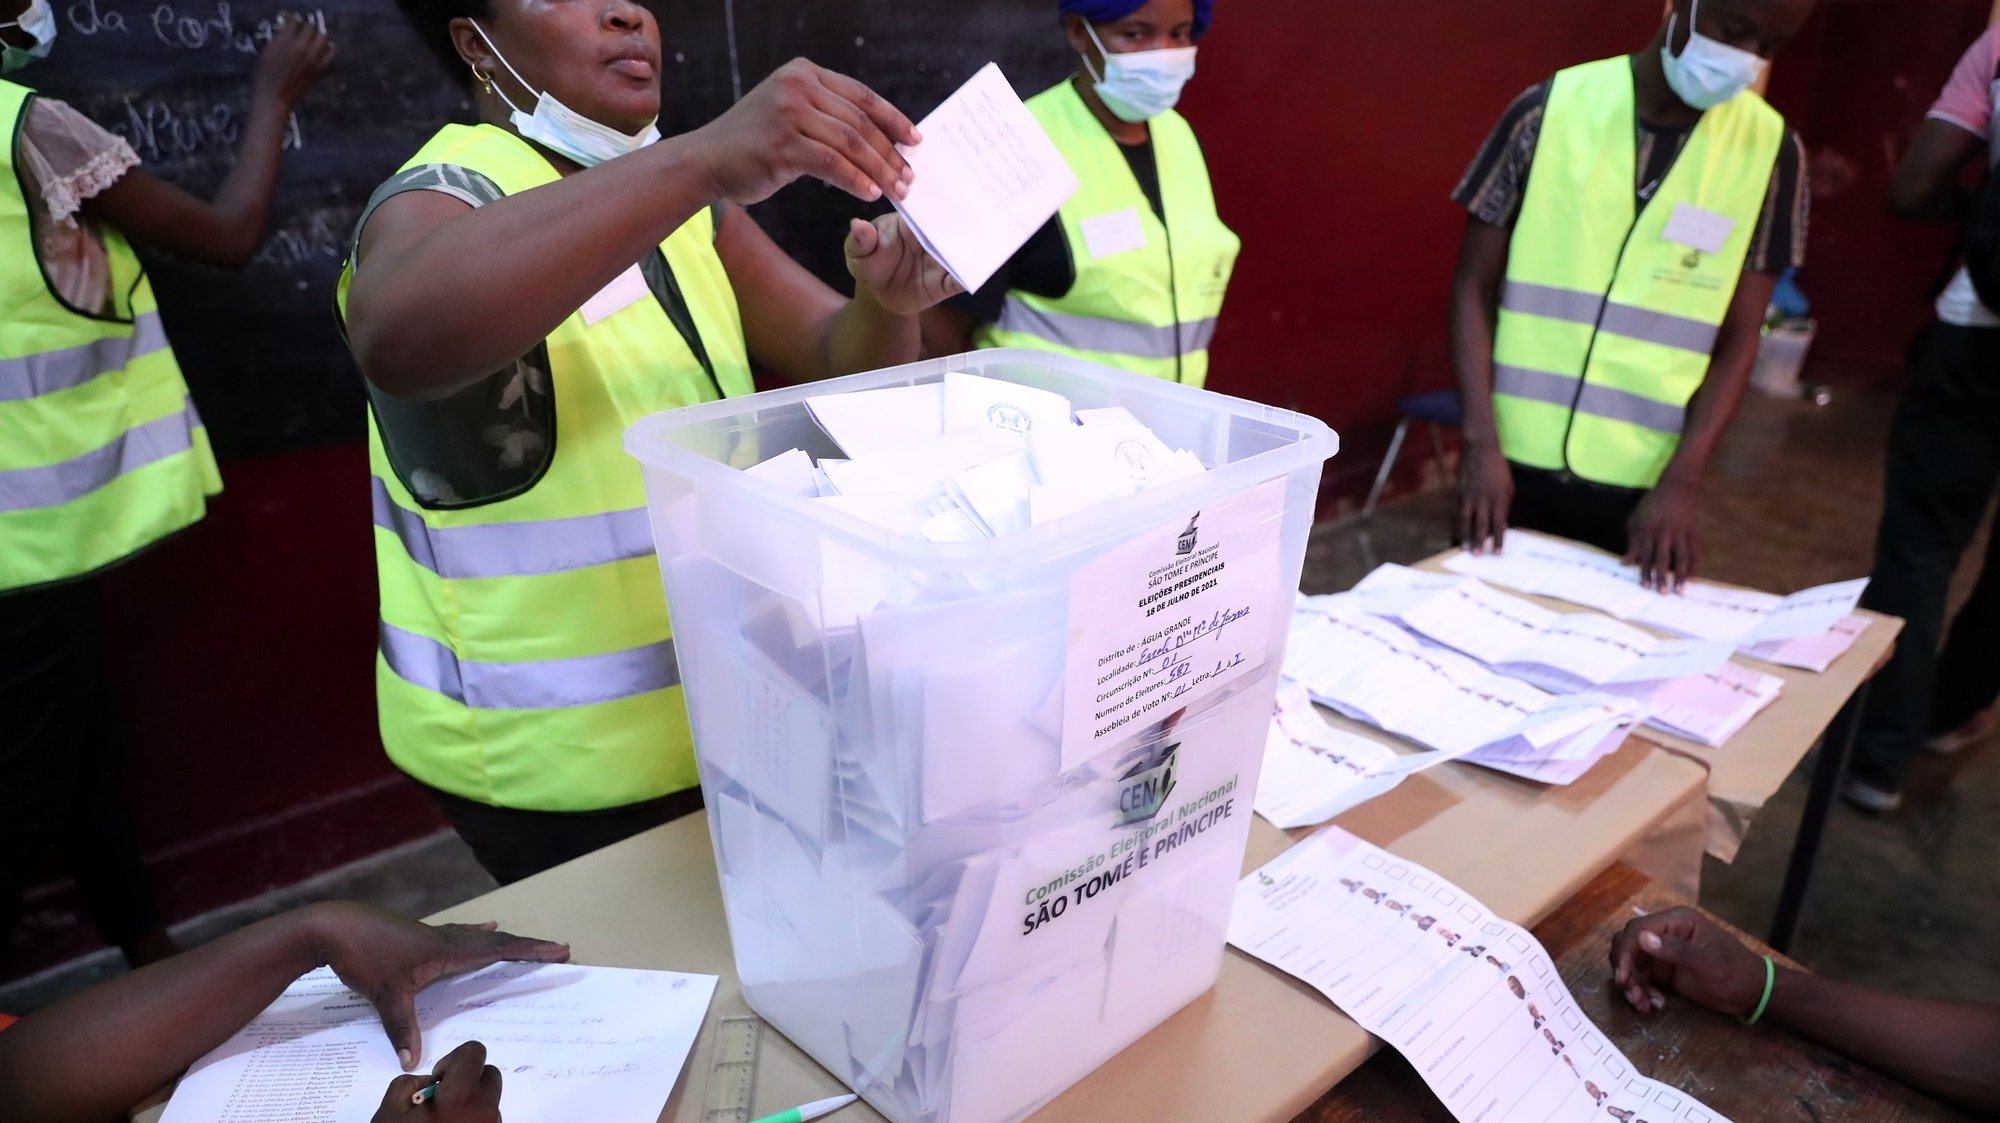 Elementos de uma secção eleitoral contam os votos no início do escrutínio eleitoral, durante as eleições presidenciais em São Tomé e Príncipe, em São Tomé, 18 de julho de 2021. NUNO VEIGA/LUSA